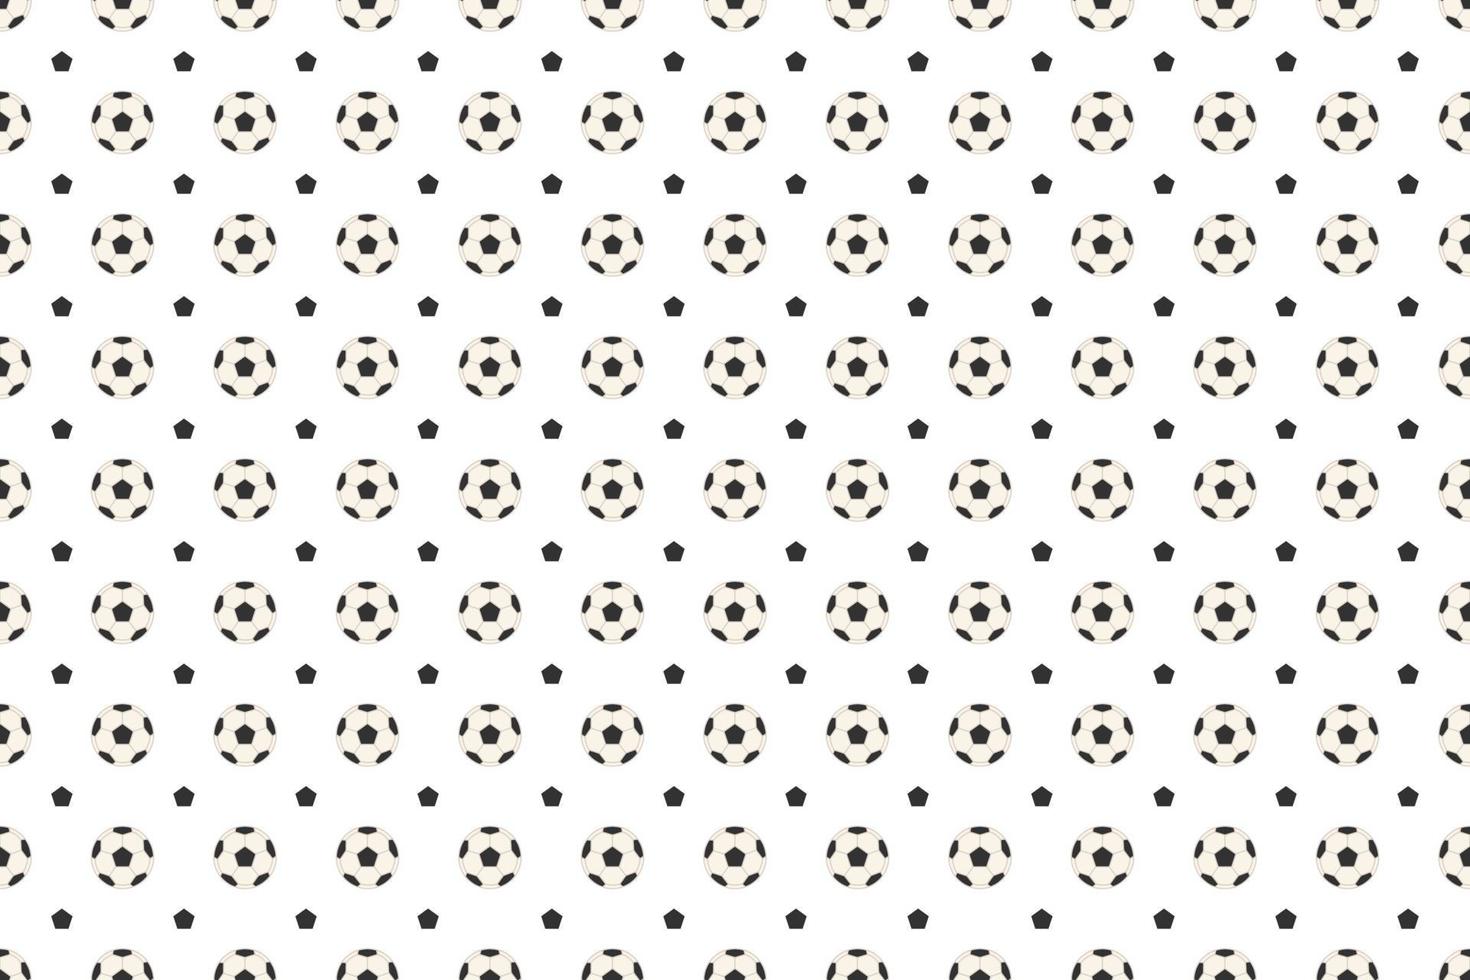 padrão perfeito de futebol em design vetorial de fundo branco vetor